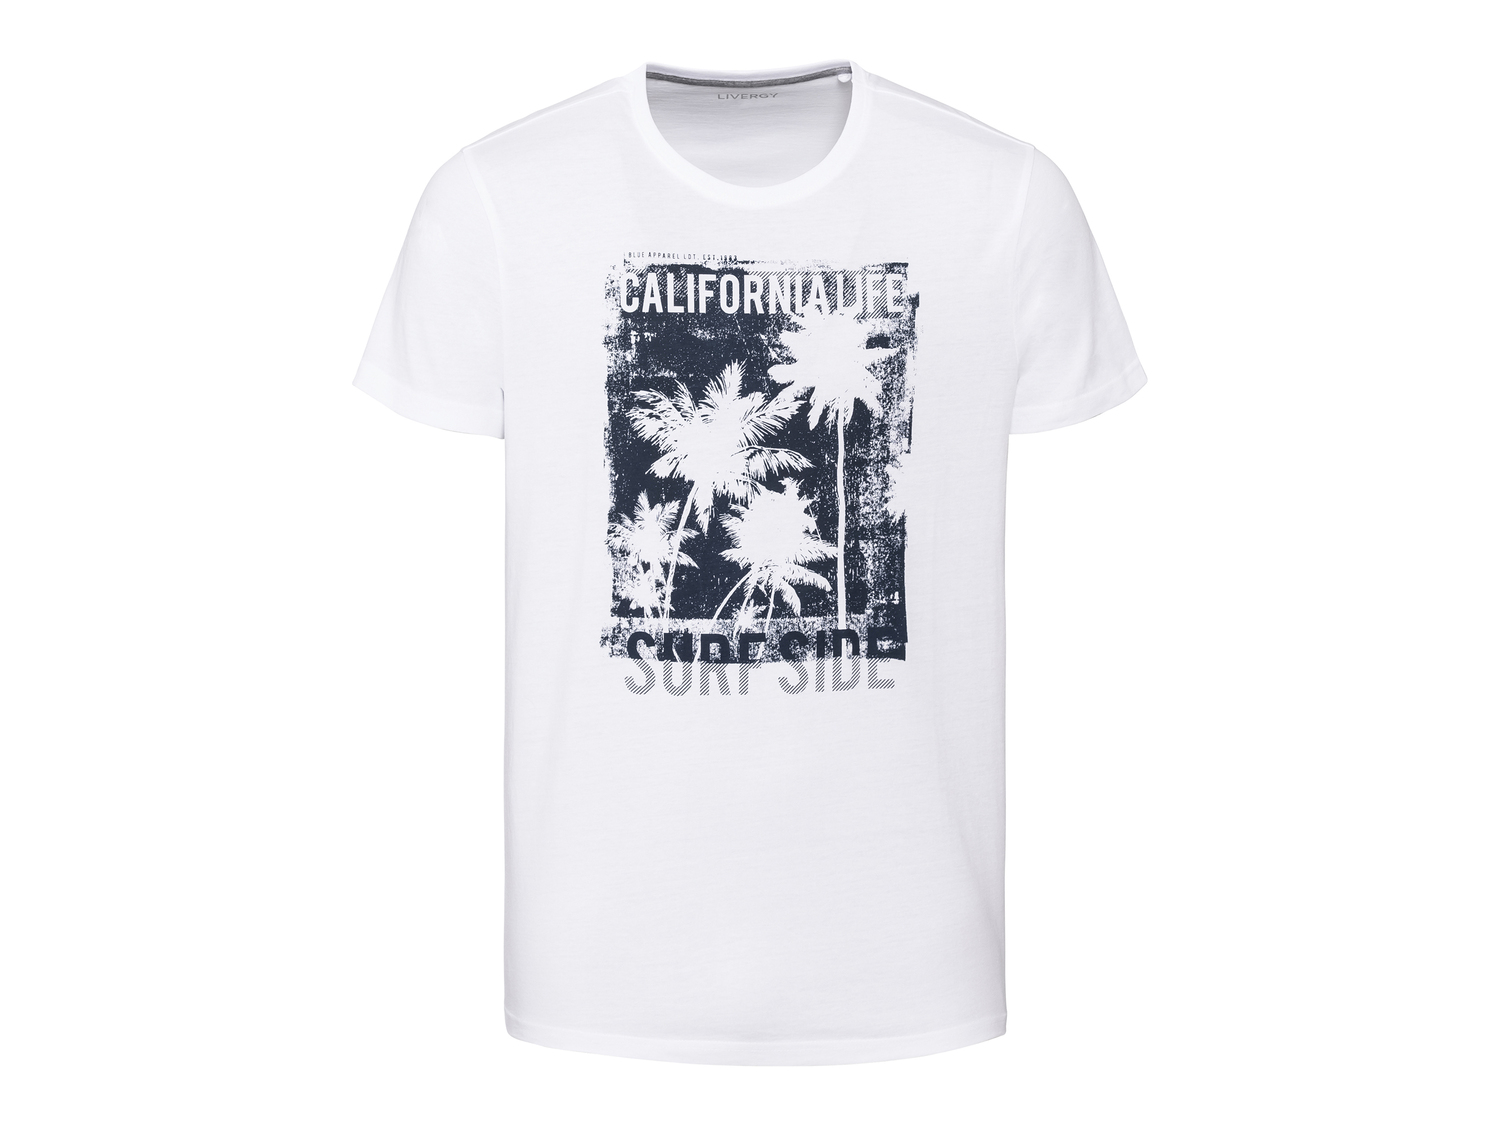 T-shirt da uomo Livergy, prezzo 2.99 € 
Misure: S-XL
Taglie disponibili

Caratteristiche

- ...